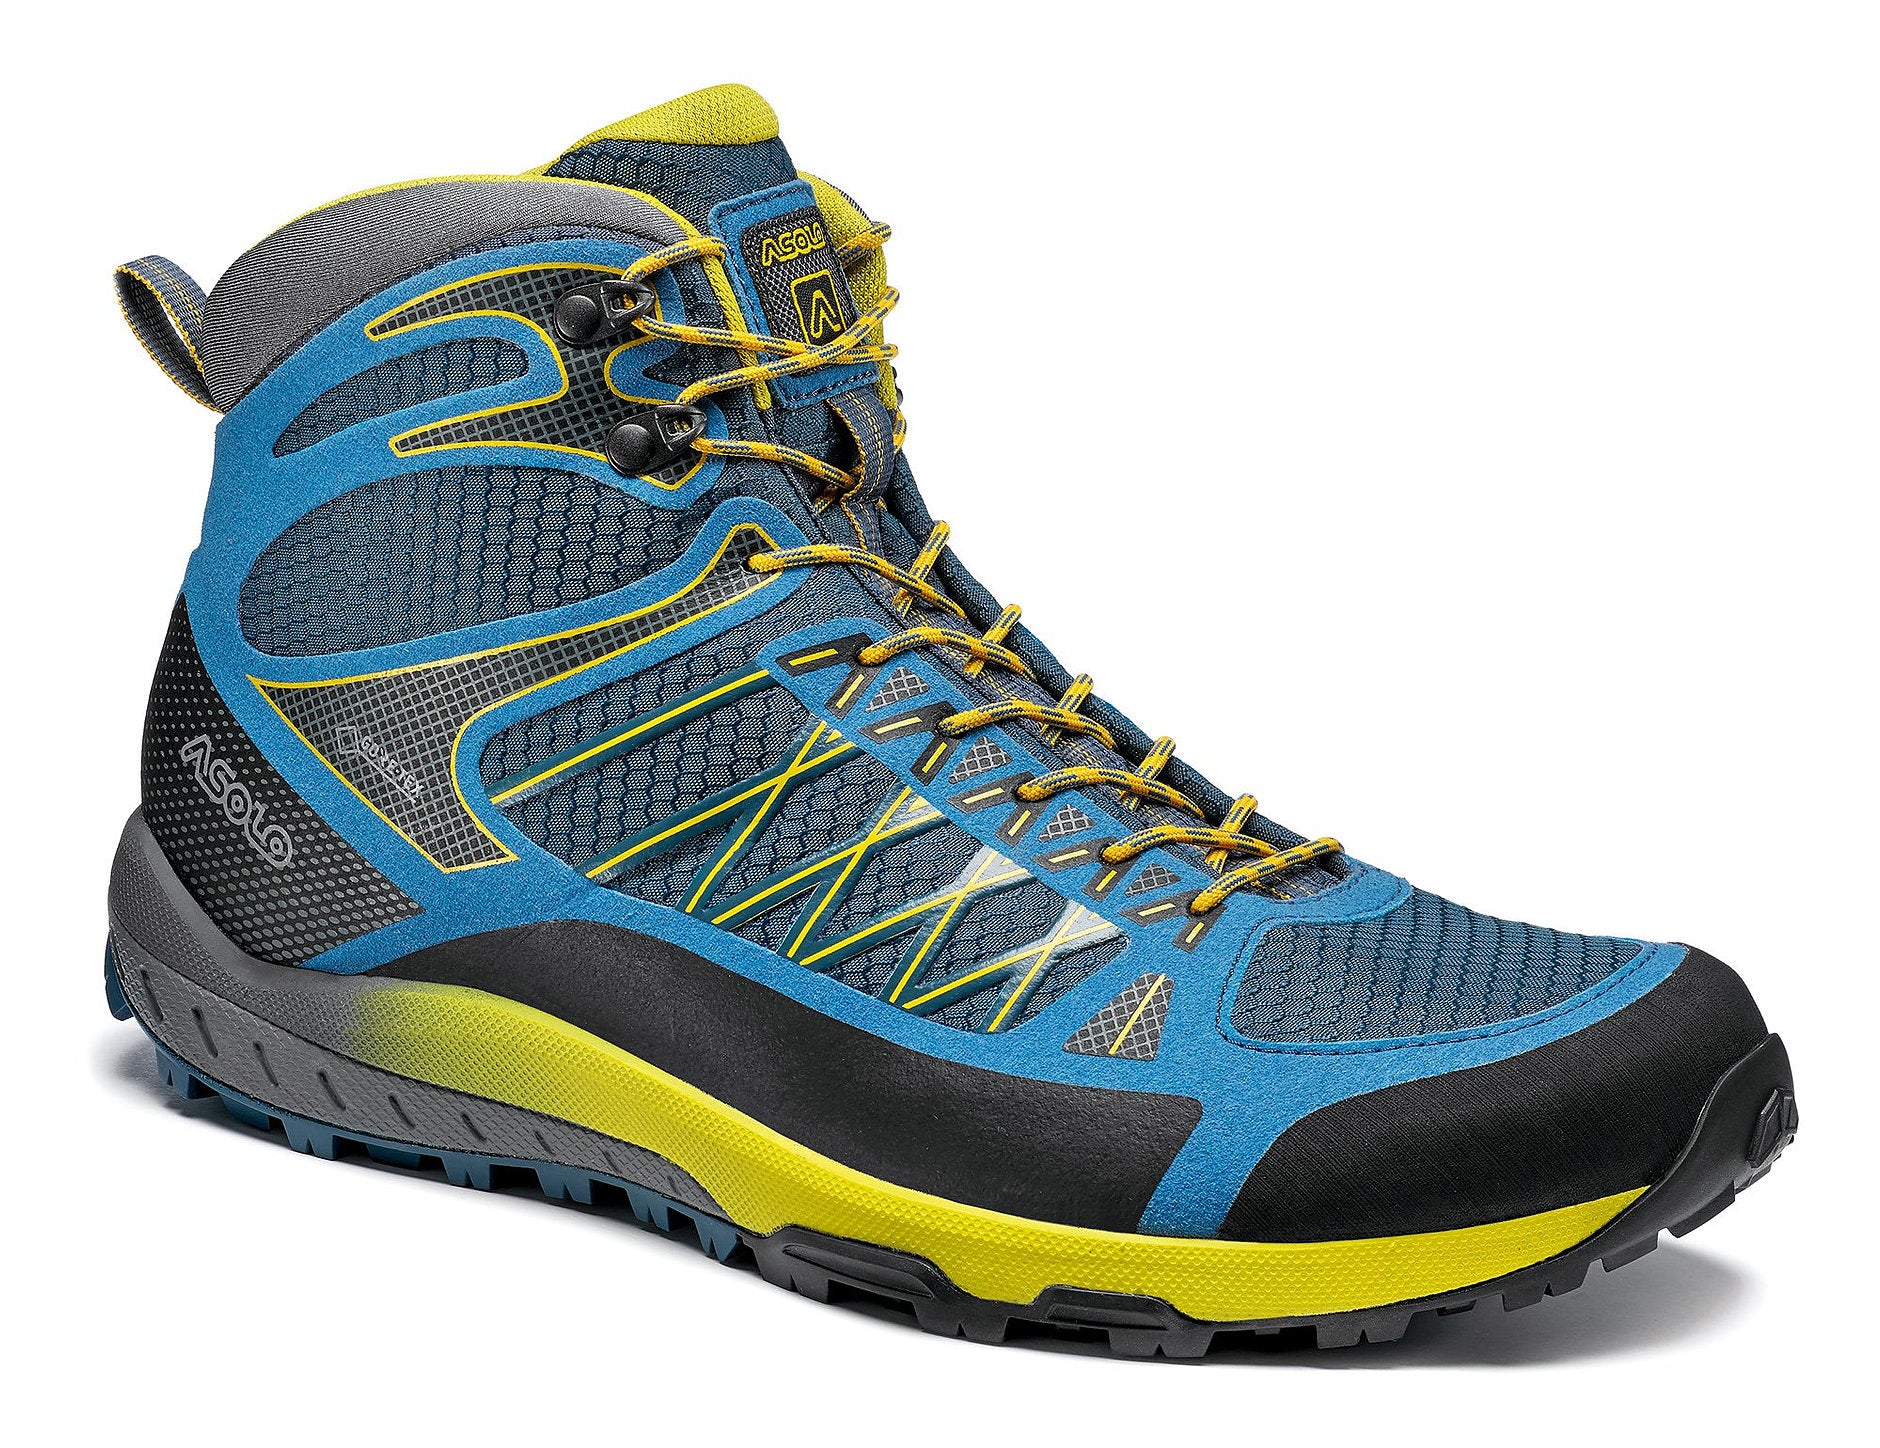 Men's Hiking Boots & Shoes – Adventure Shop